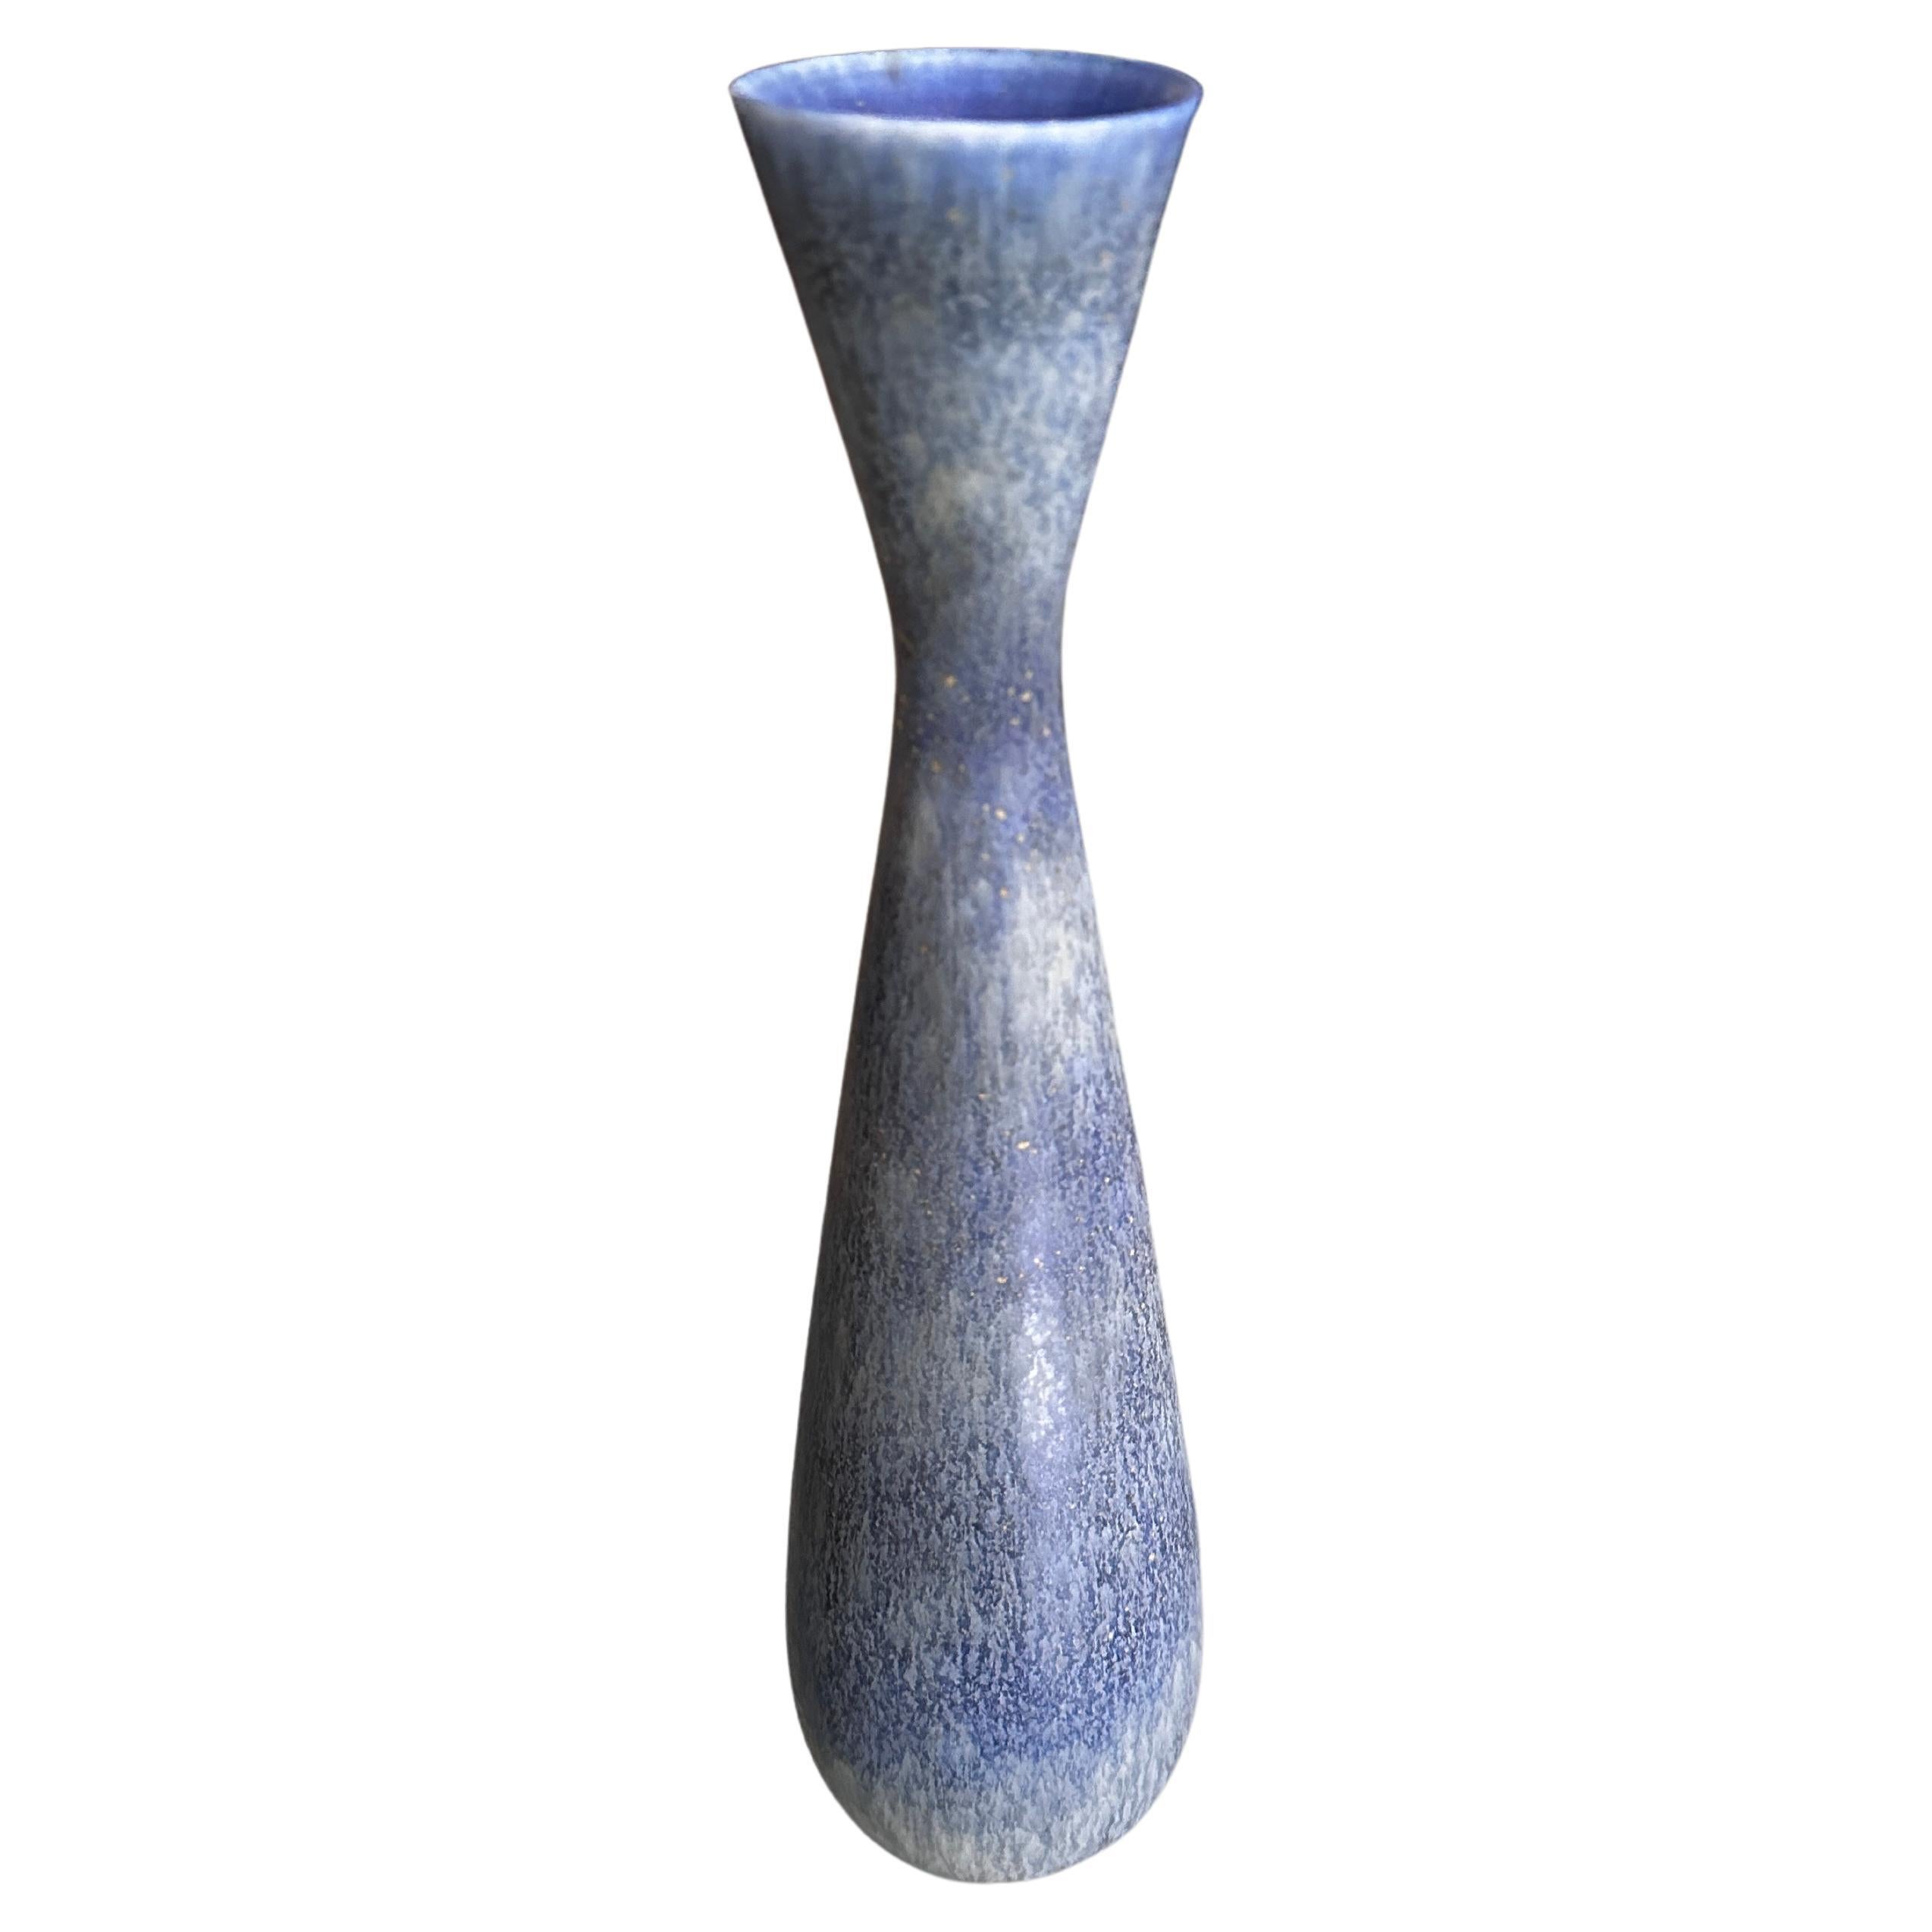 Porceline Vase Designed by Carl-Mary Stålhane For Rörstrand For Sale